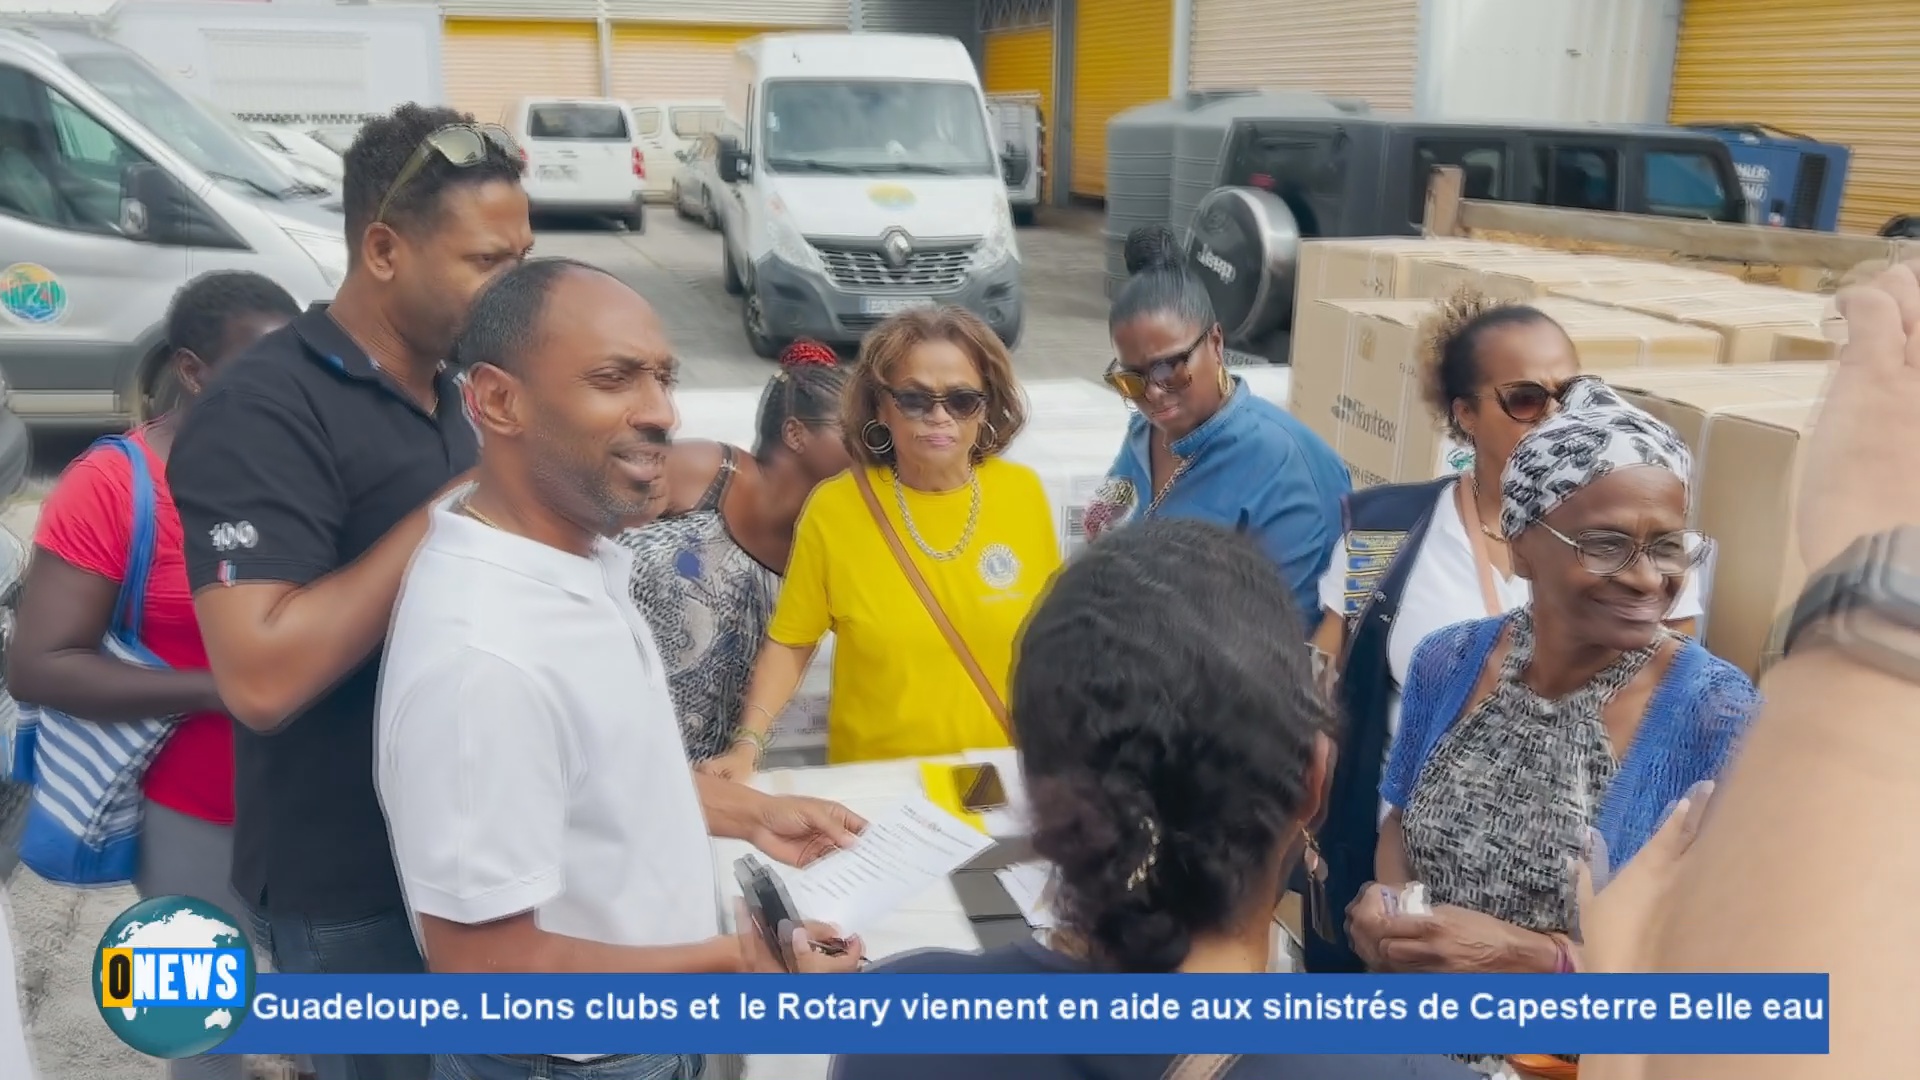 [Vidéo] Guadeloupe. Lions clubs et le Rotary viennent en aide aux sinistrés de Capesterre Belle eau